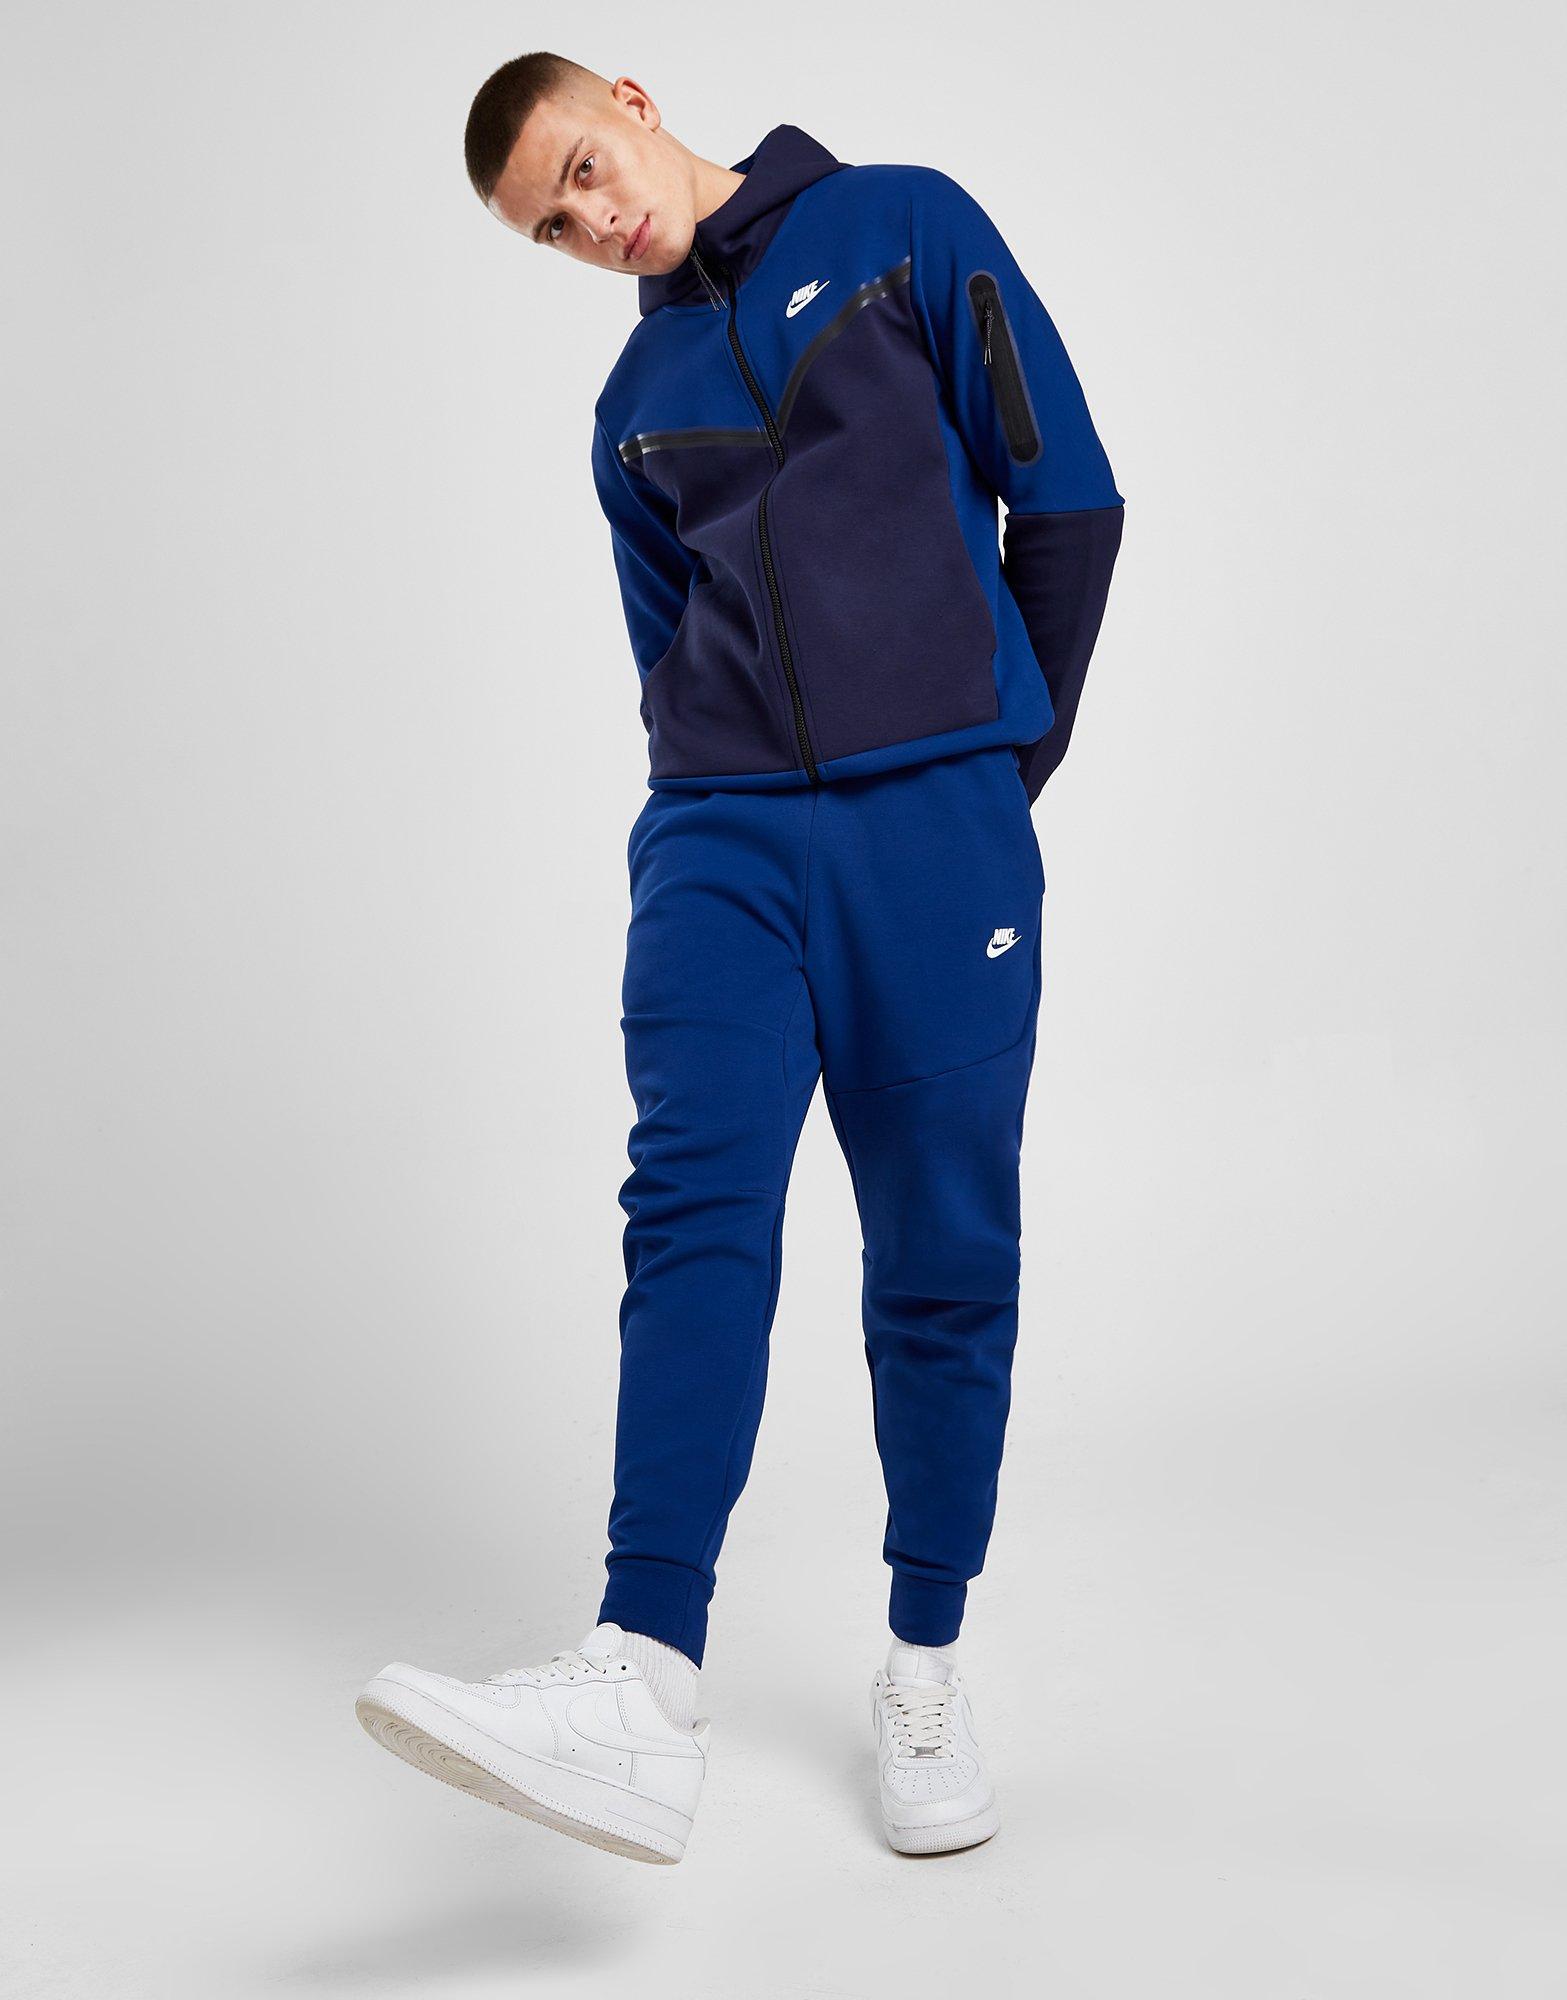 prins zweer Bakkerij Blue Nike Tech Fleece Joggers - JD Sports Ireland